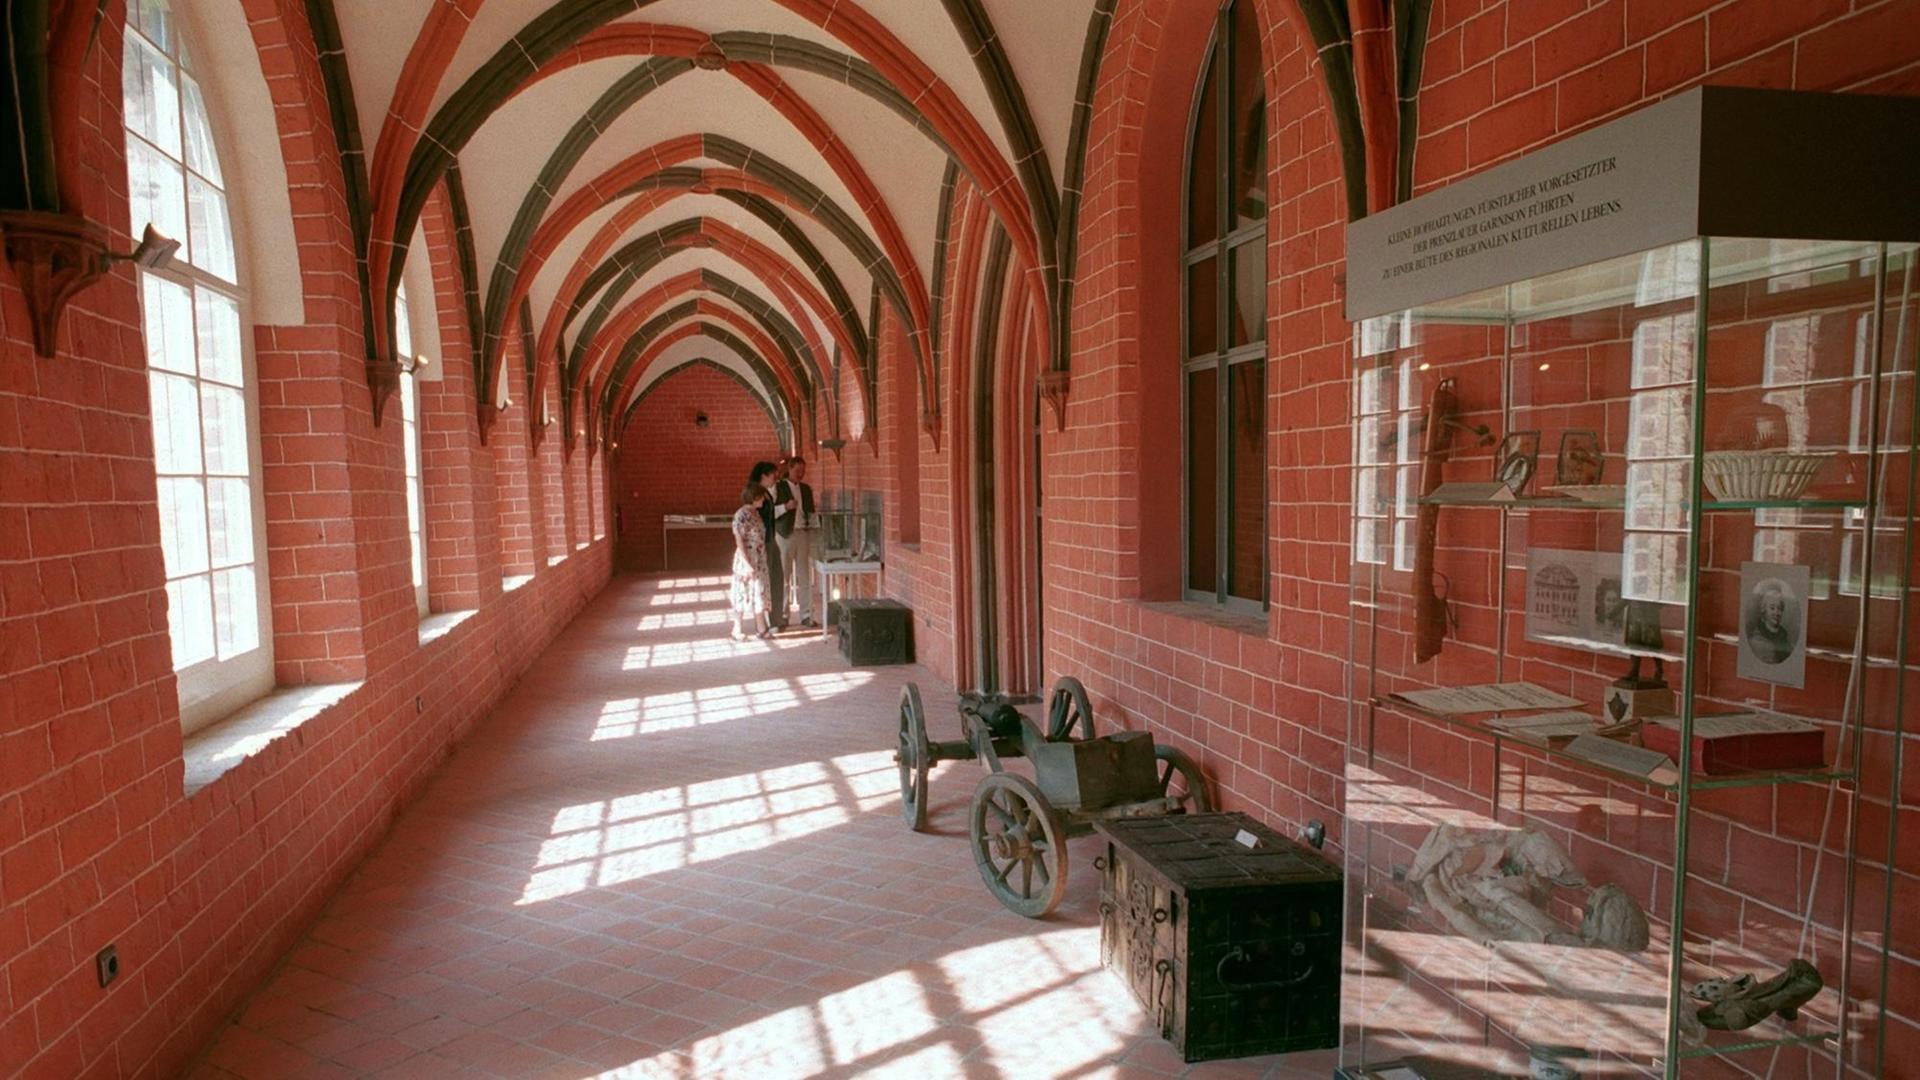 Blick in den Kreuzgang des 1270 gegründeten früheren Dominikanerklosters Prenzlau, Landkreis Uckermark, das am 10.09.1999 als Kulturzentrum der Kreisstadt eröffnet wurde